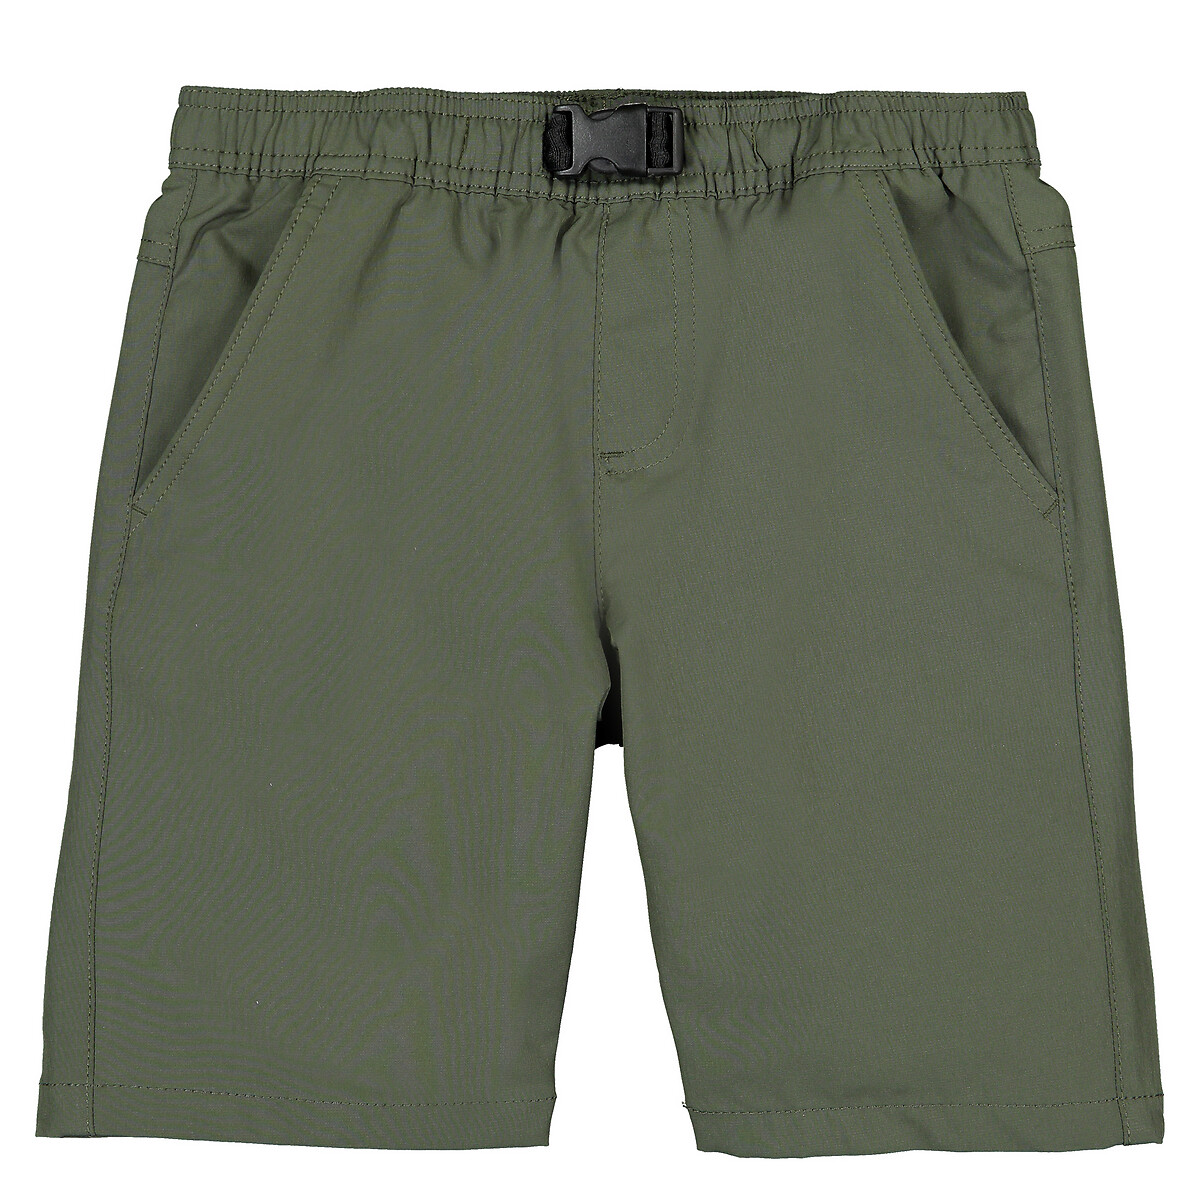 Bermuda Shorts, 3-12 Years